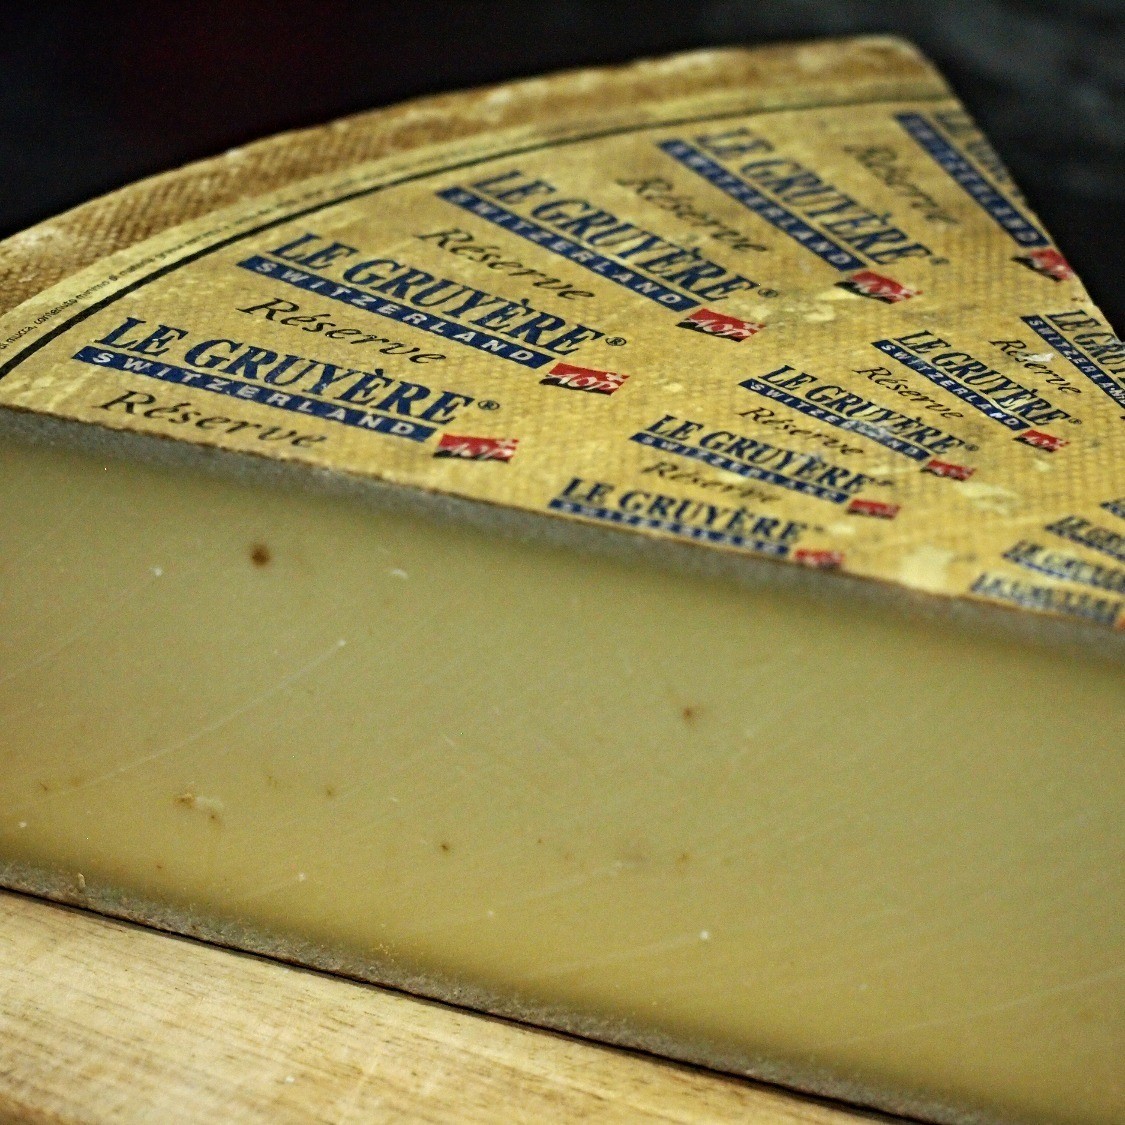 Le Gruyere Cheese per 100gm